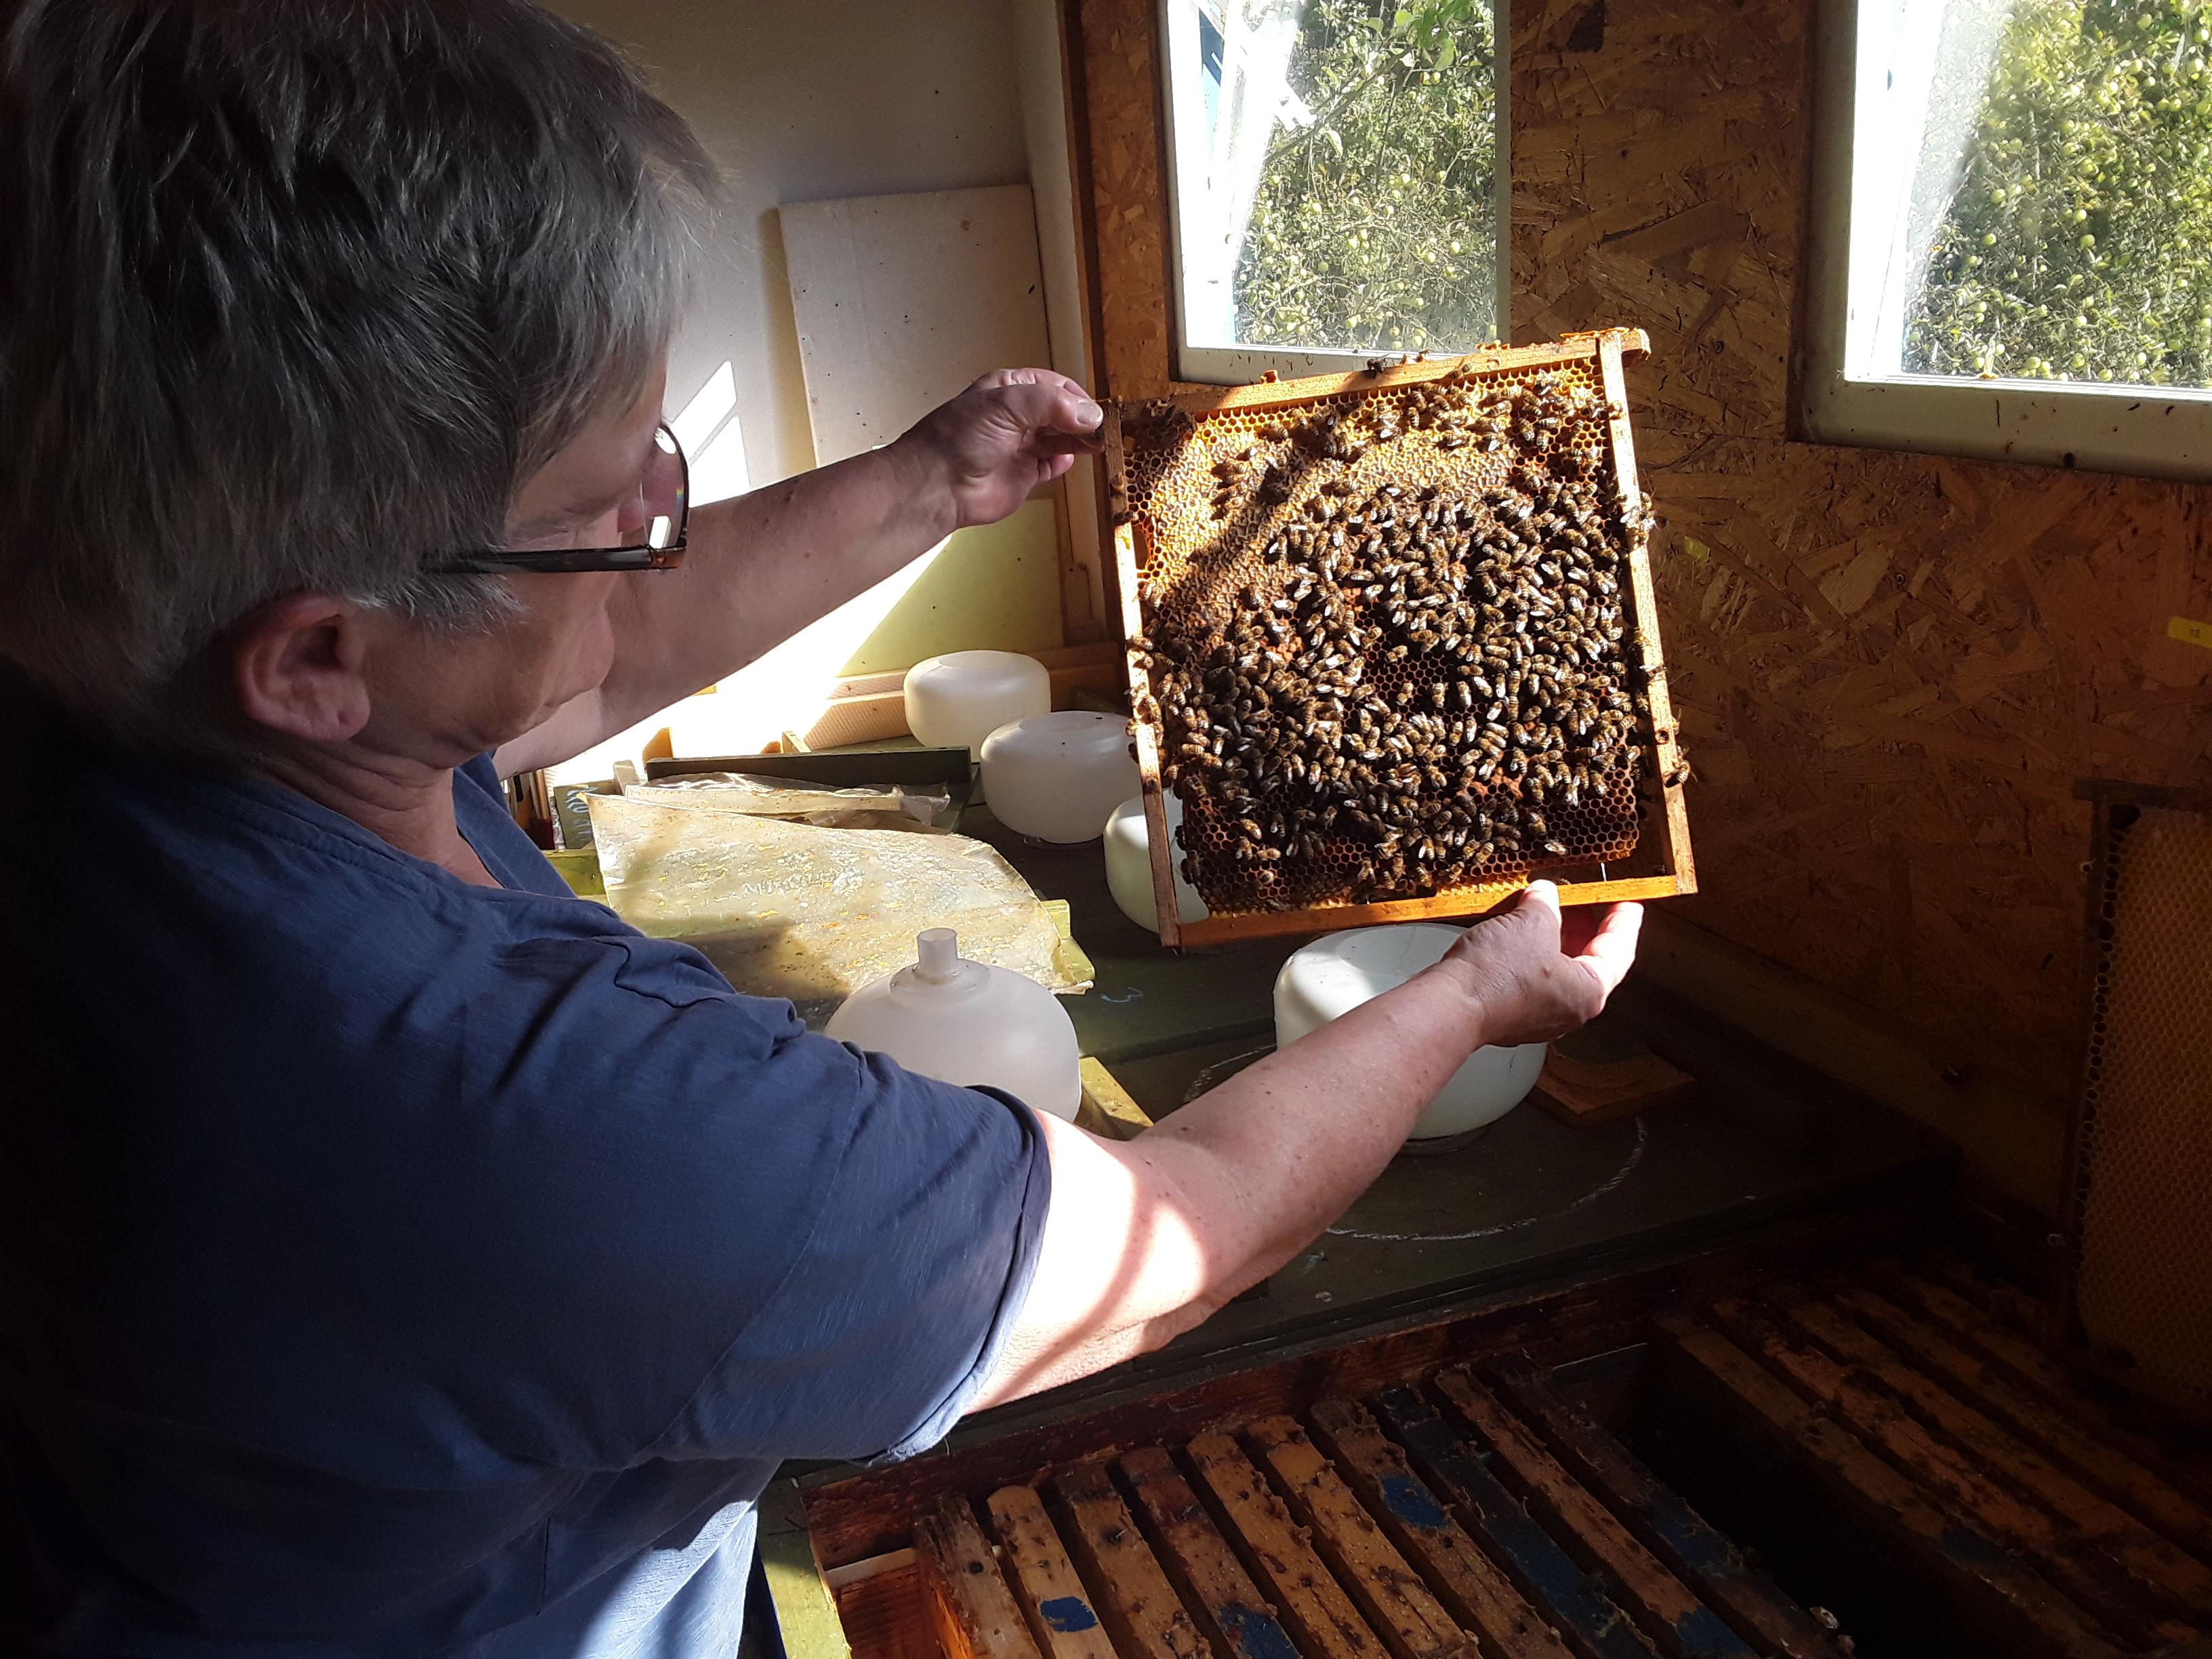 Heimische Bienen wie die von Imkerin Emma Hoisl produzieren nicht nur Honig, sondern gewährleisten auch die Bestäubung unzähliger Nutzpflanzen in der Region.